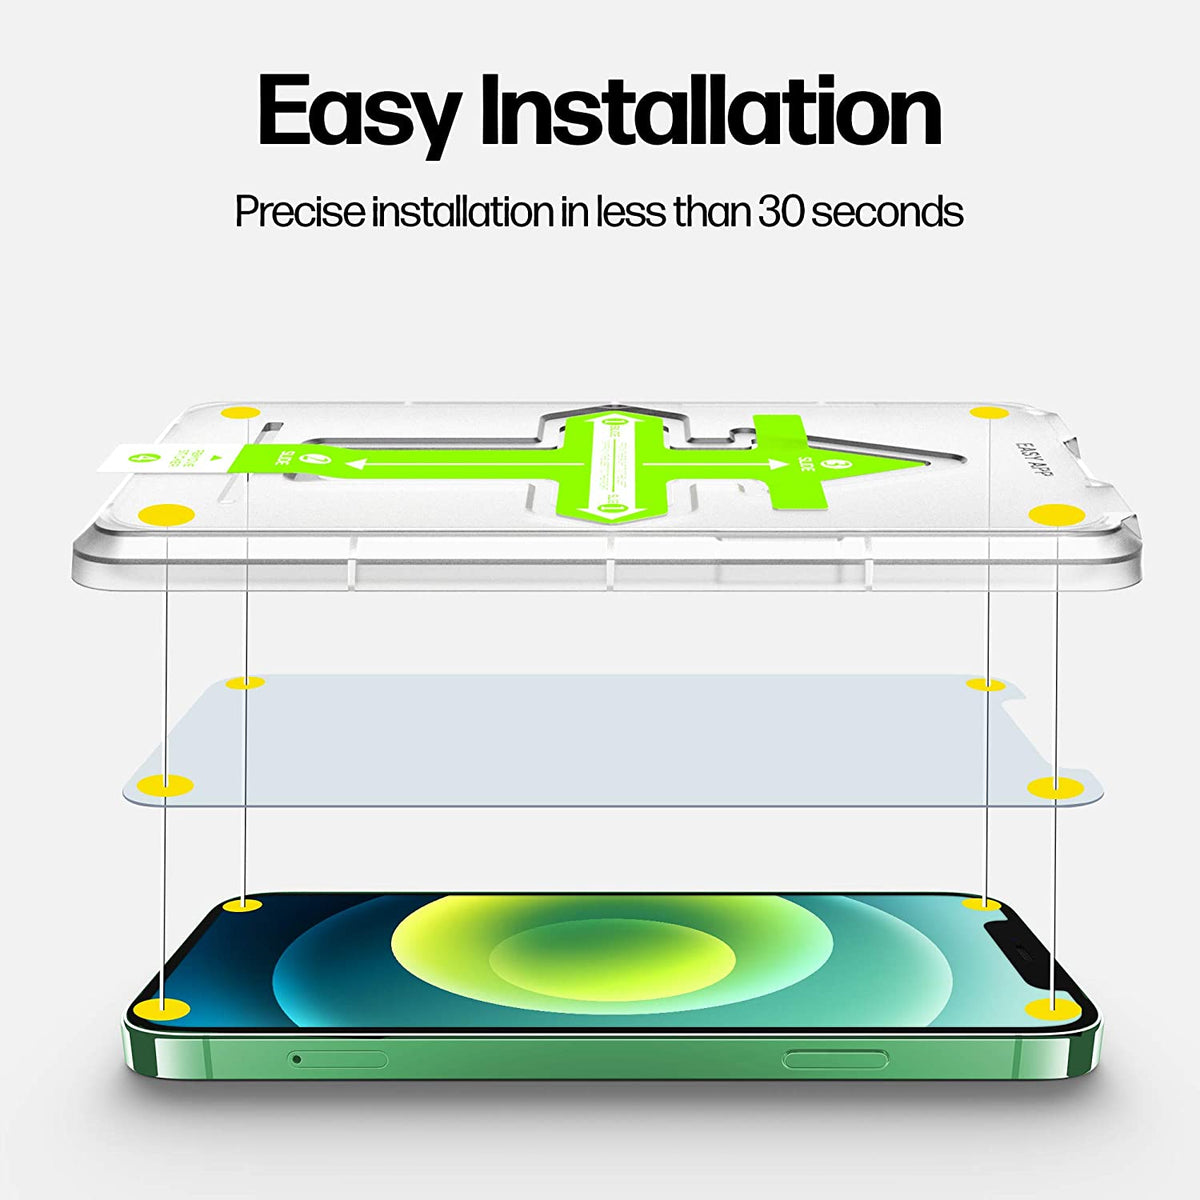 Power Theory Schutzfolie kompatibel mit iPhone 12 Mini [2 Stück] - mit Schablone, Folie, Displayschutzfolie, Schutzglas Cover